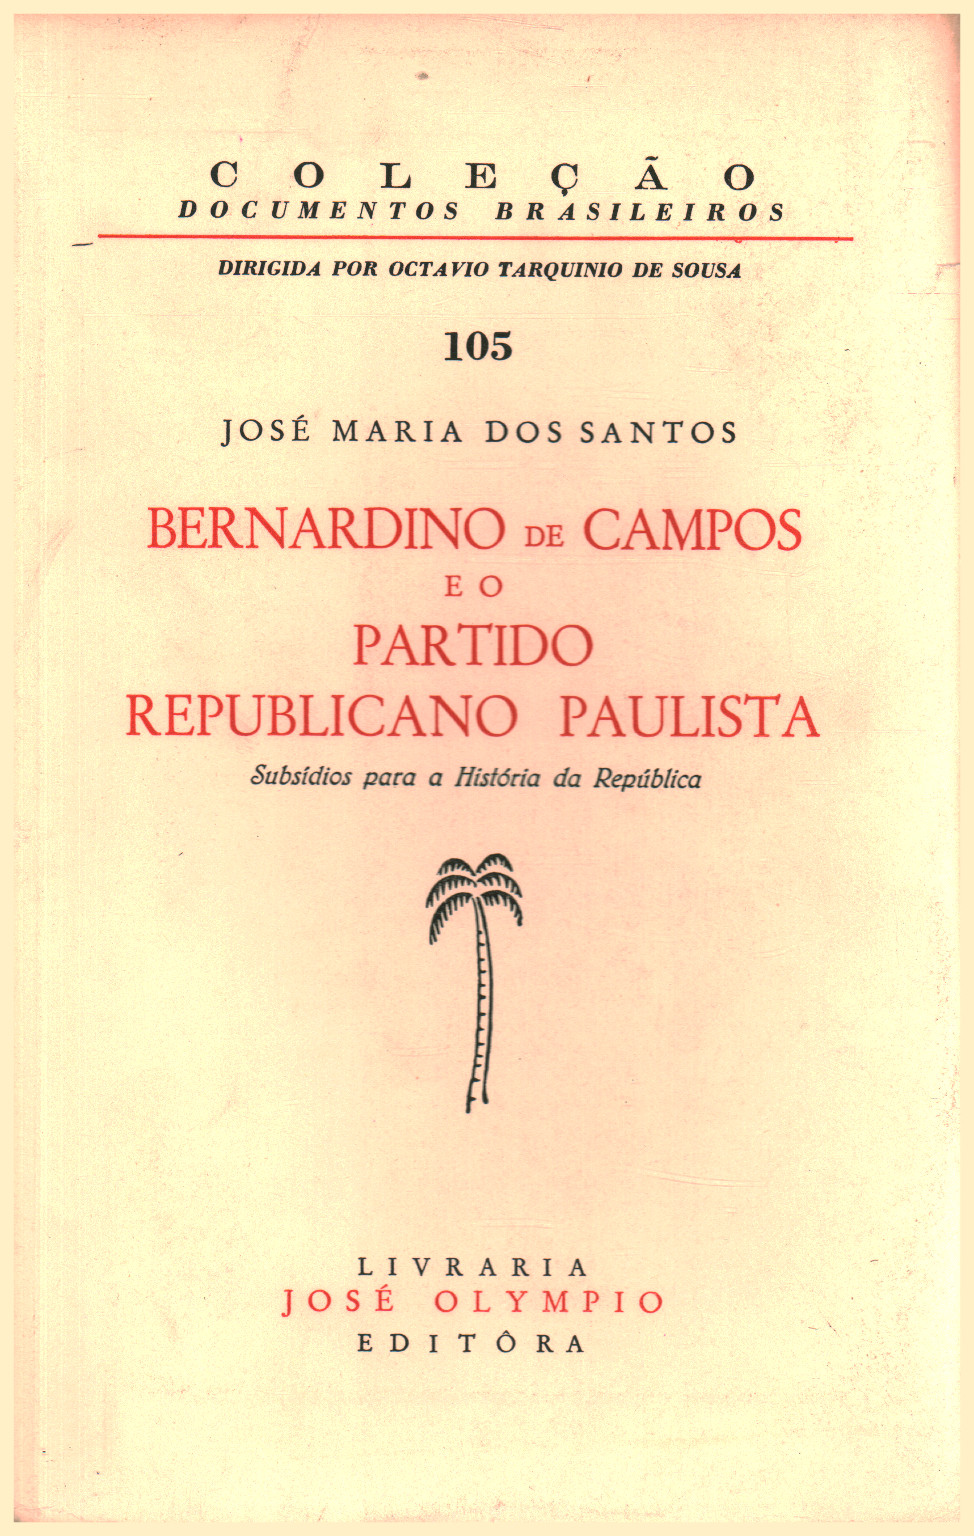 Bernardino de Campos und oder Partido Republicano Pauli, s.zu.